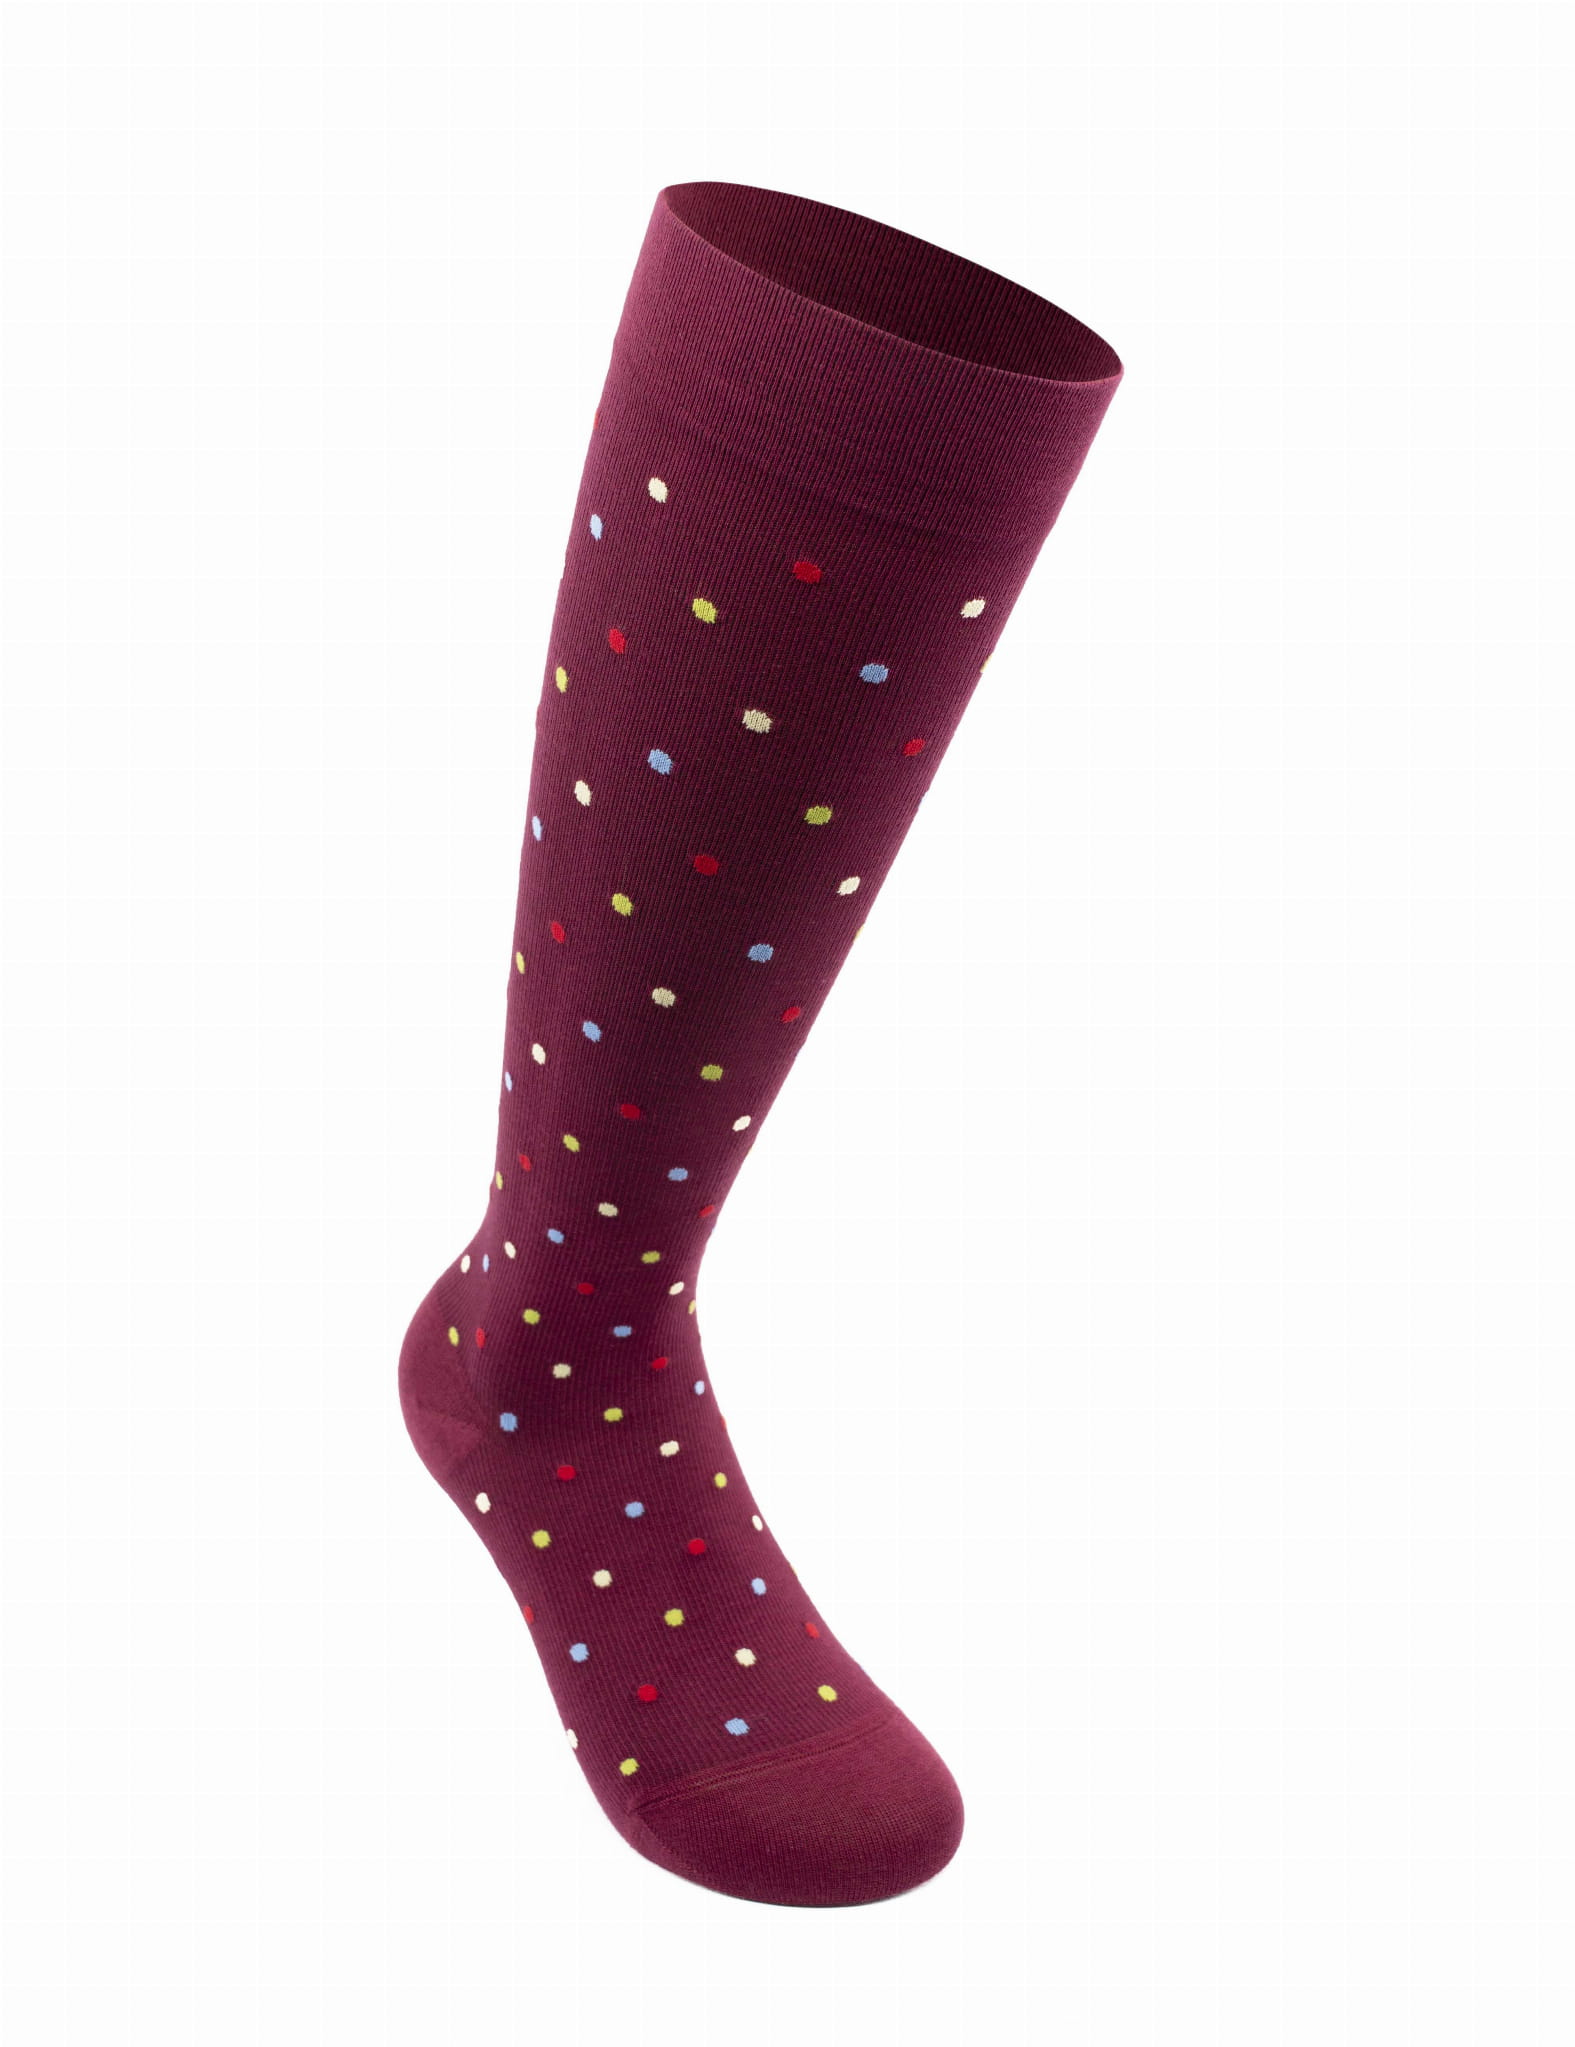 RELAXSAN  Fancy Socks Podkolanówki uciskowe z bawełny - bordowe w kropki CCL1